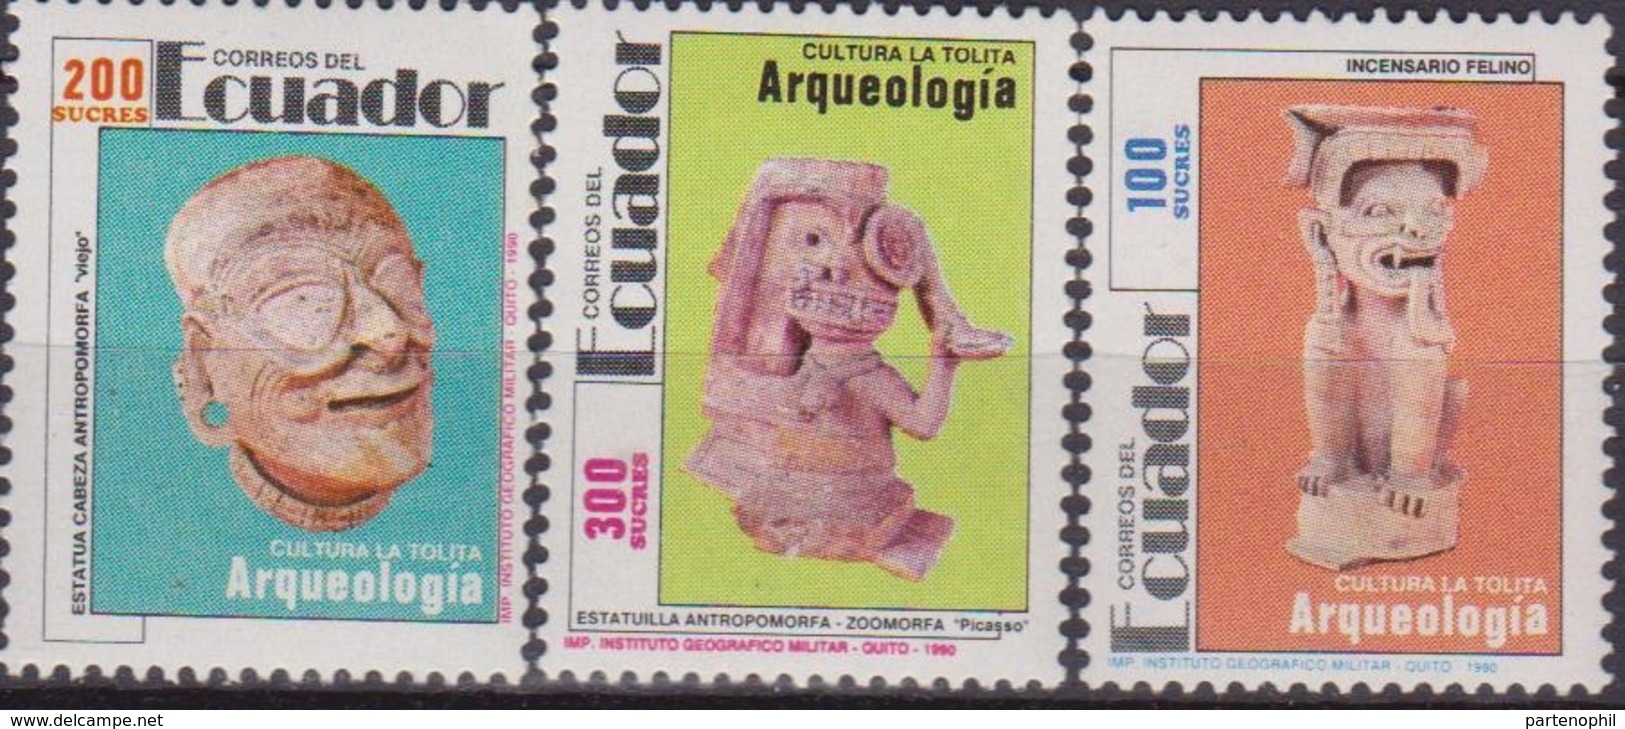 Ecuador Archeologia Archeology Arqueologia Set MNH - Archéologie